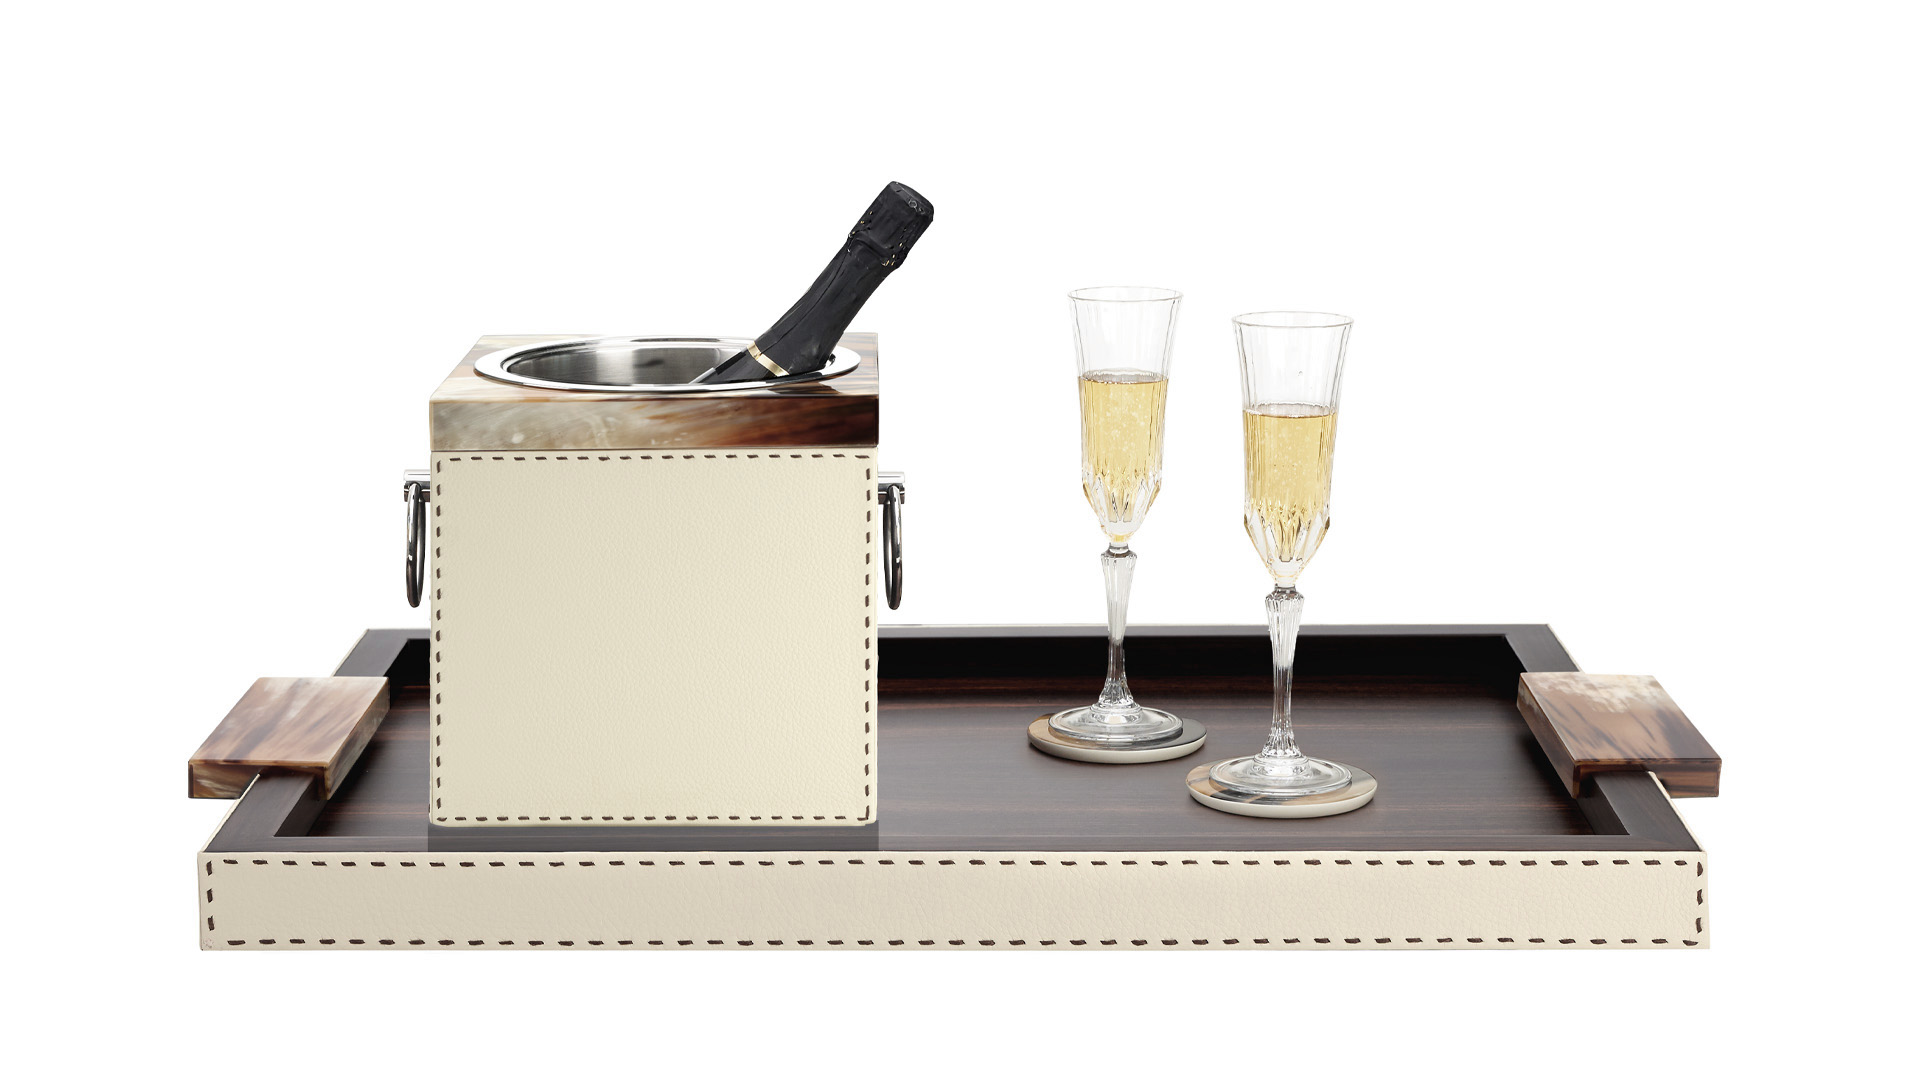 Accessori tavola - Nives secchiello champagne in corno e pelle martellata Ice-cream - copertina - Arcahorn